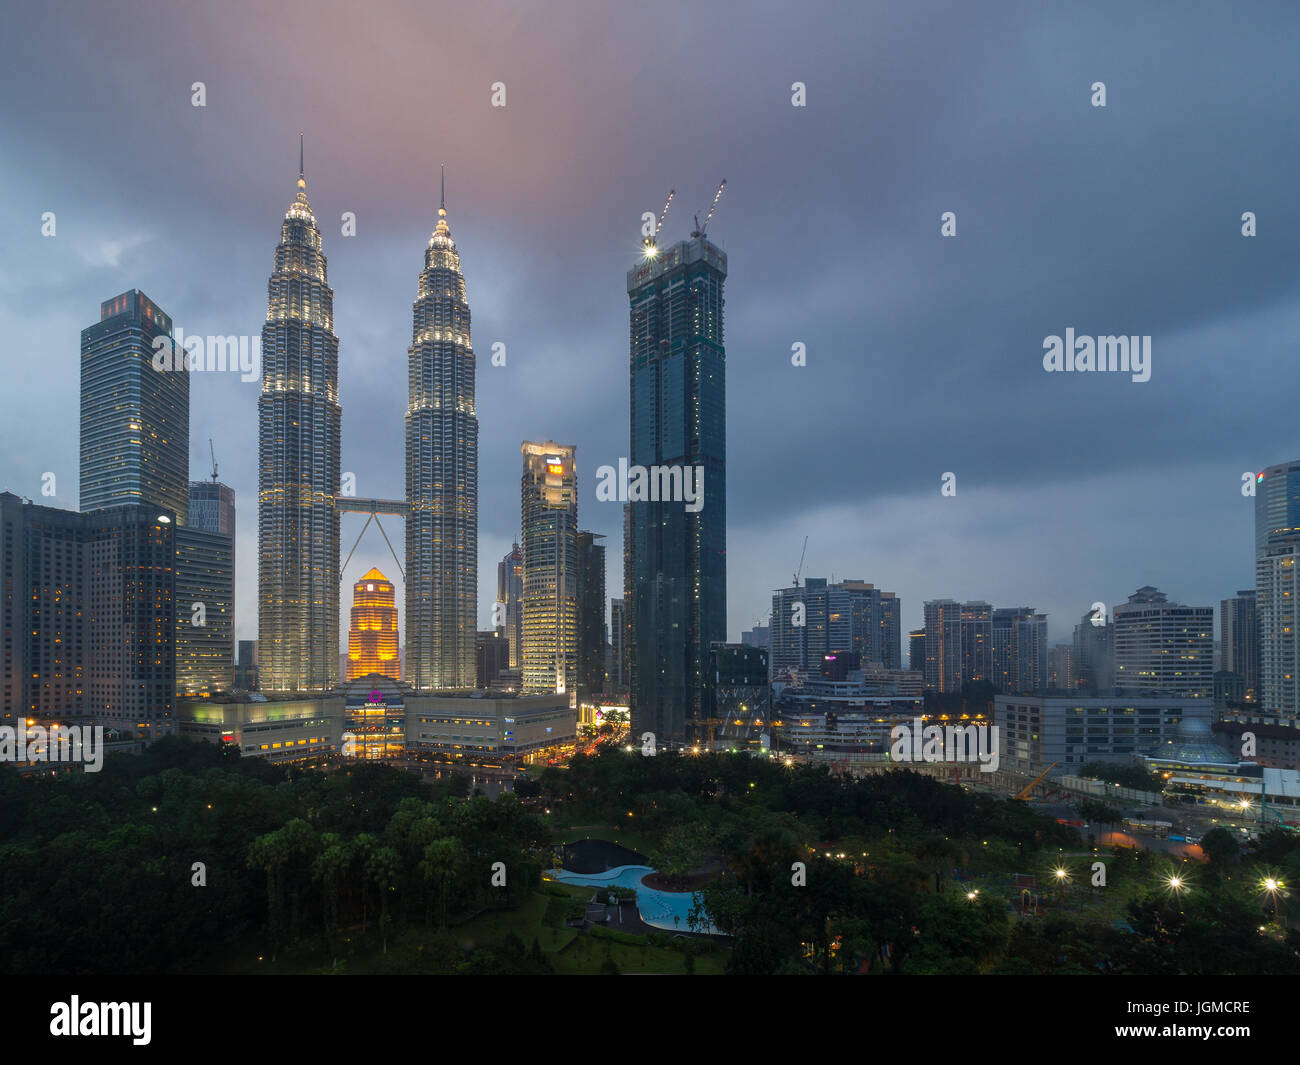 Petronas Twin Towers in cloudy day at twilight time, high tower citysacpe landmark in Kuala Lumpur, Malaysia Stock Photo